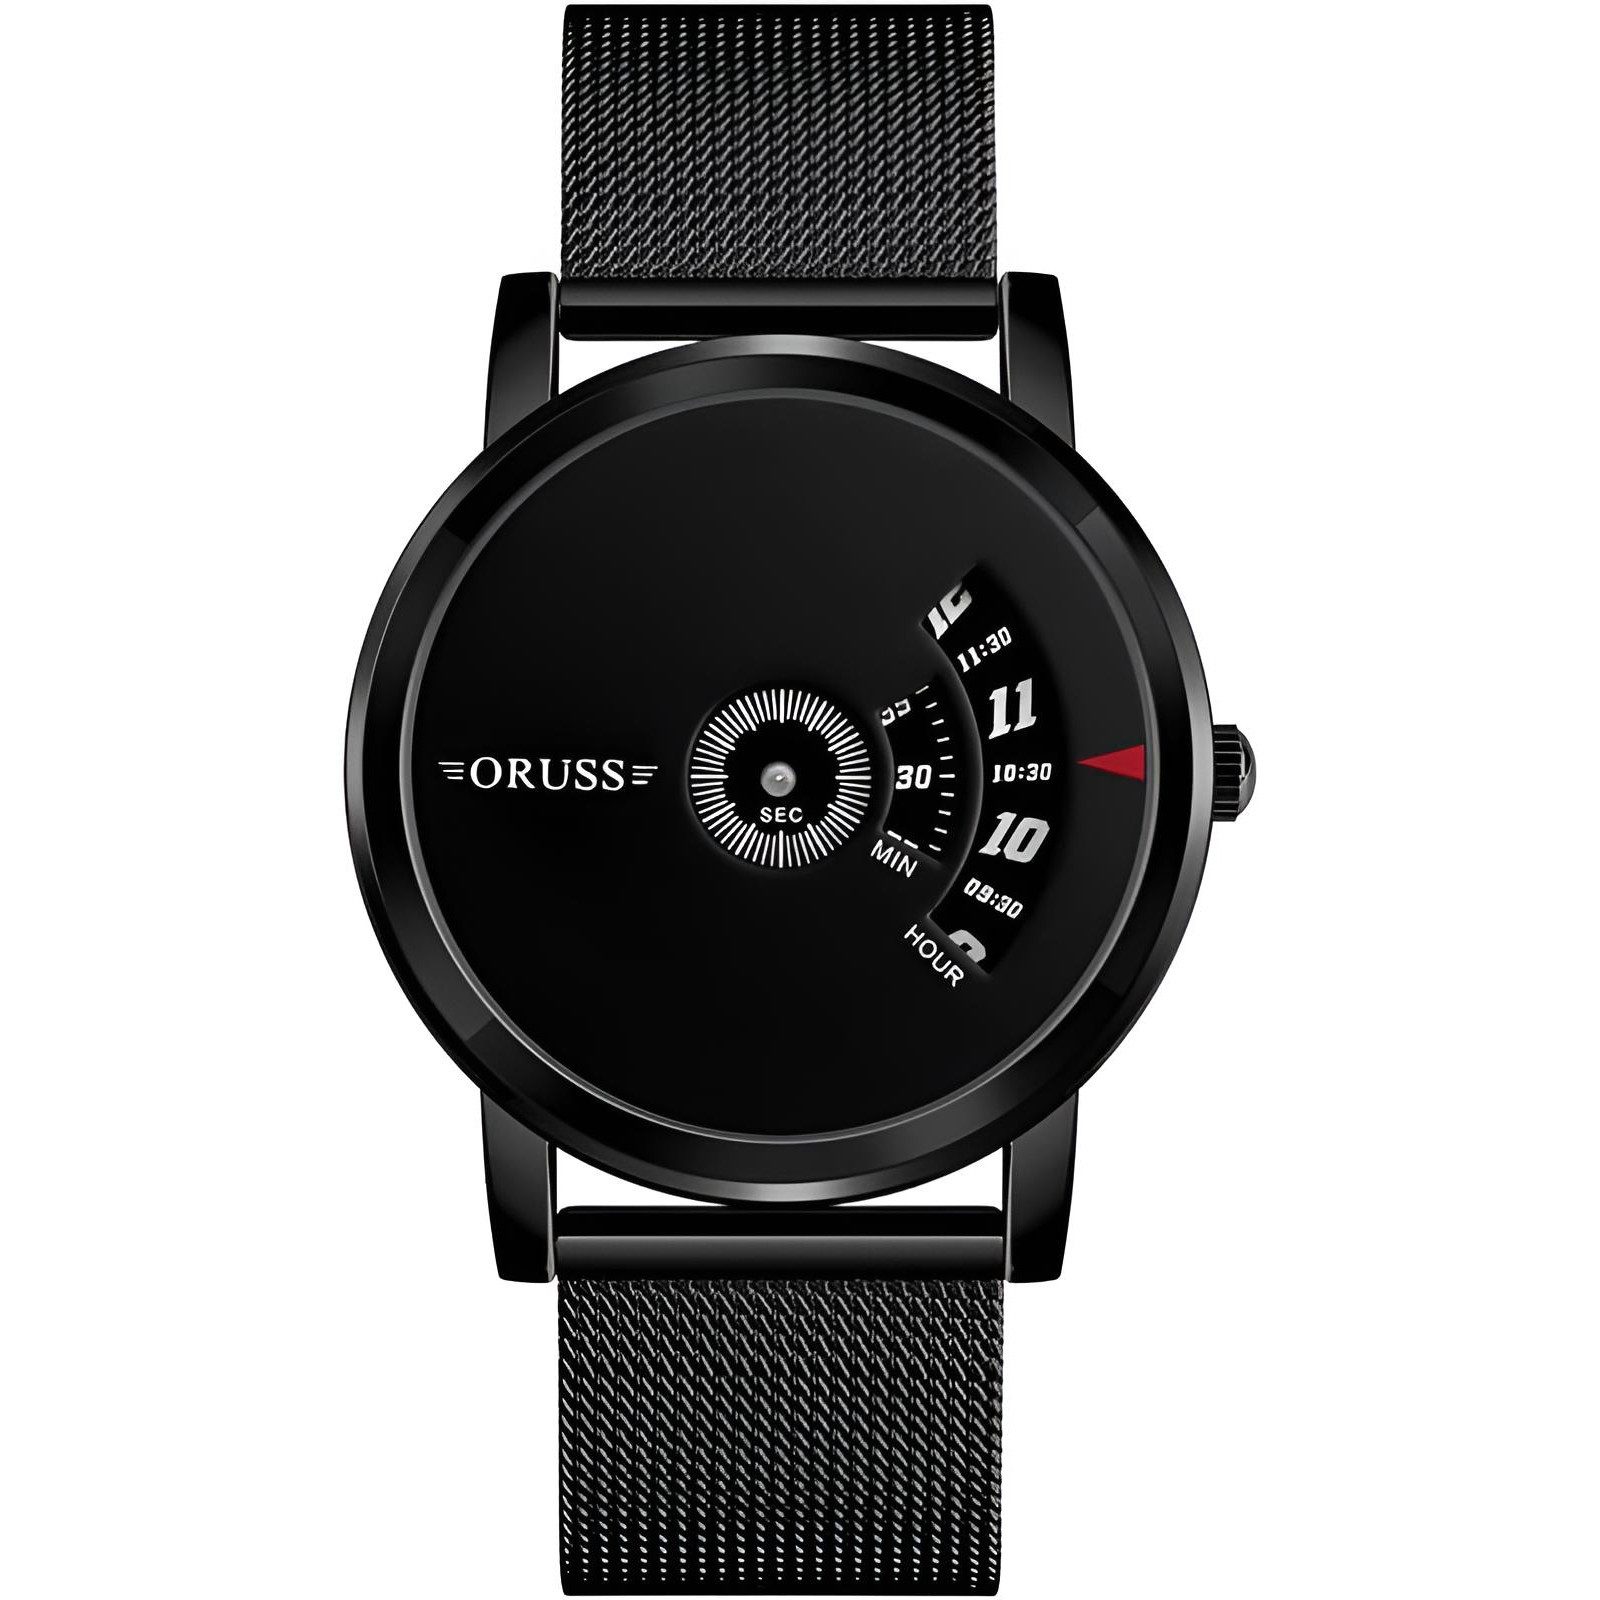 S&T Design Quarzuhr Herren Armbanduhr Herrenuhr Männeruhren Luxusuhr Schwarz, inkl. Geschenketui + Werkzeug zum verstellen